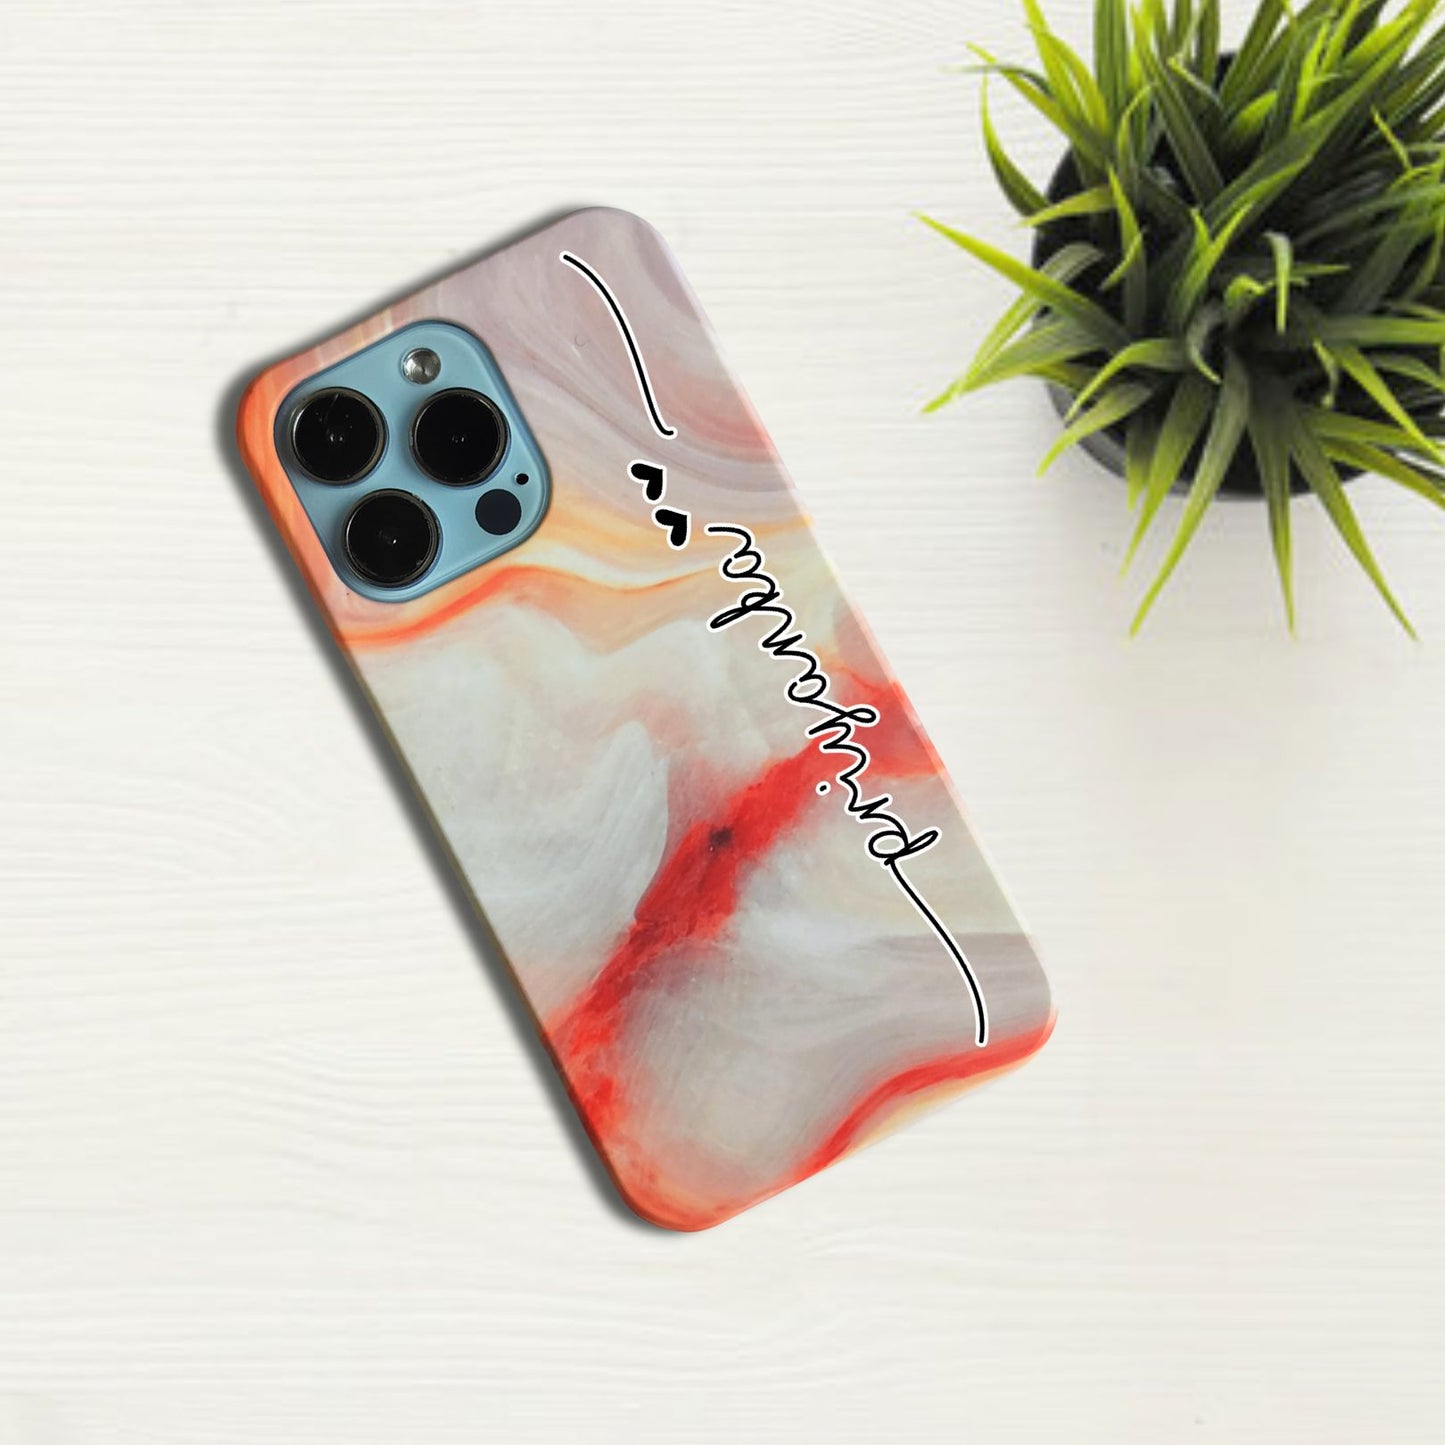 Flotterring Marble Effect V2 Phone Case Cover For Oppo